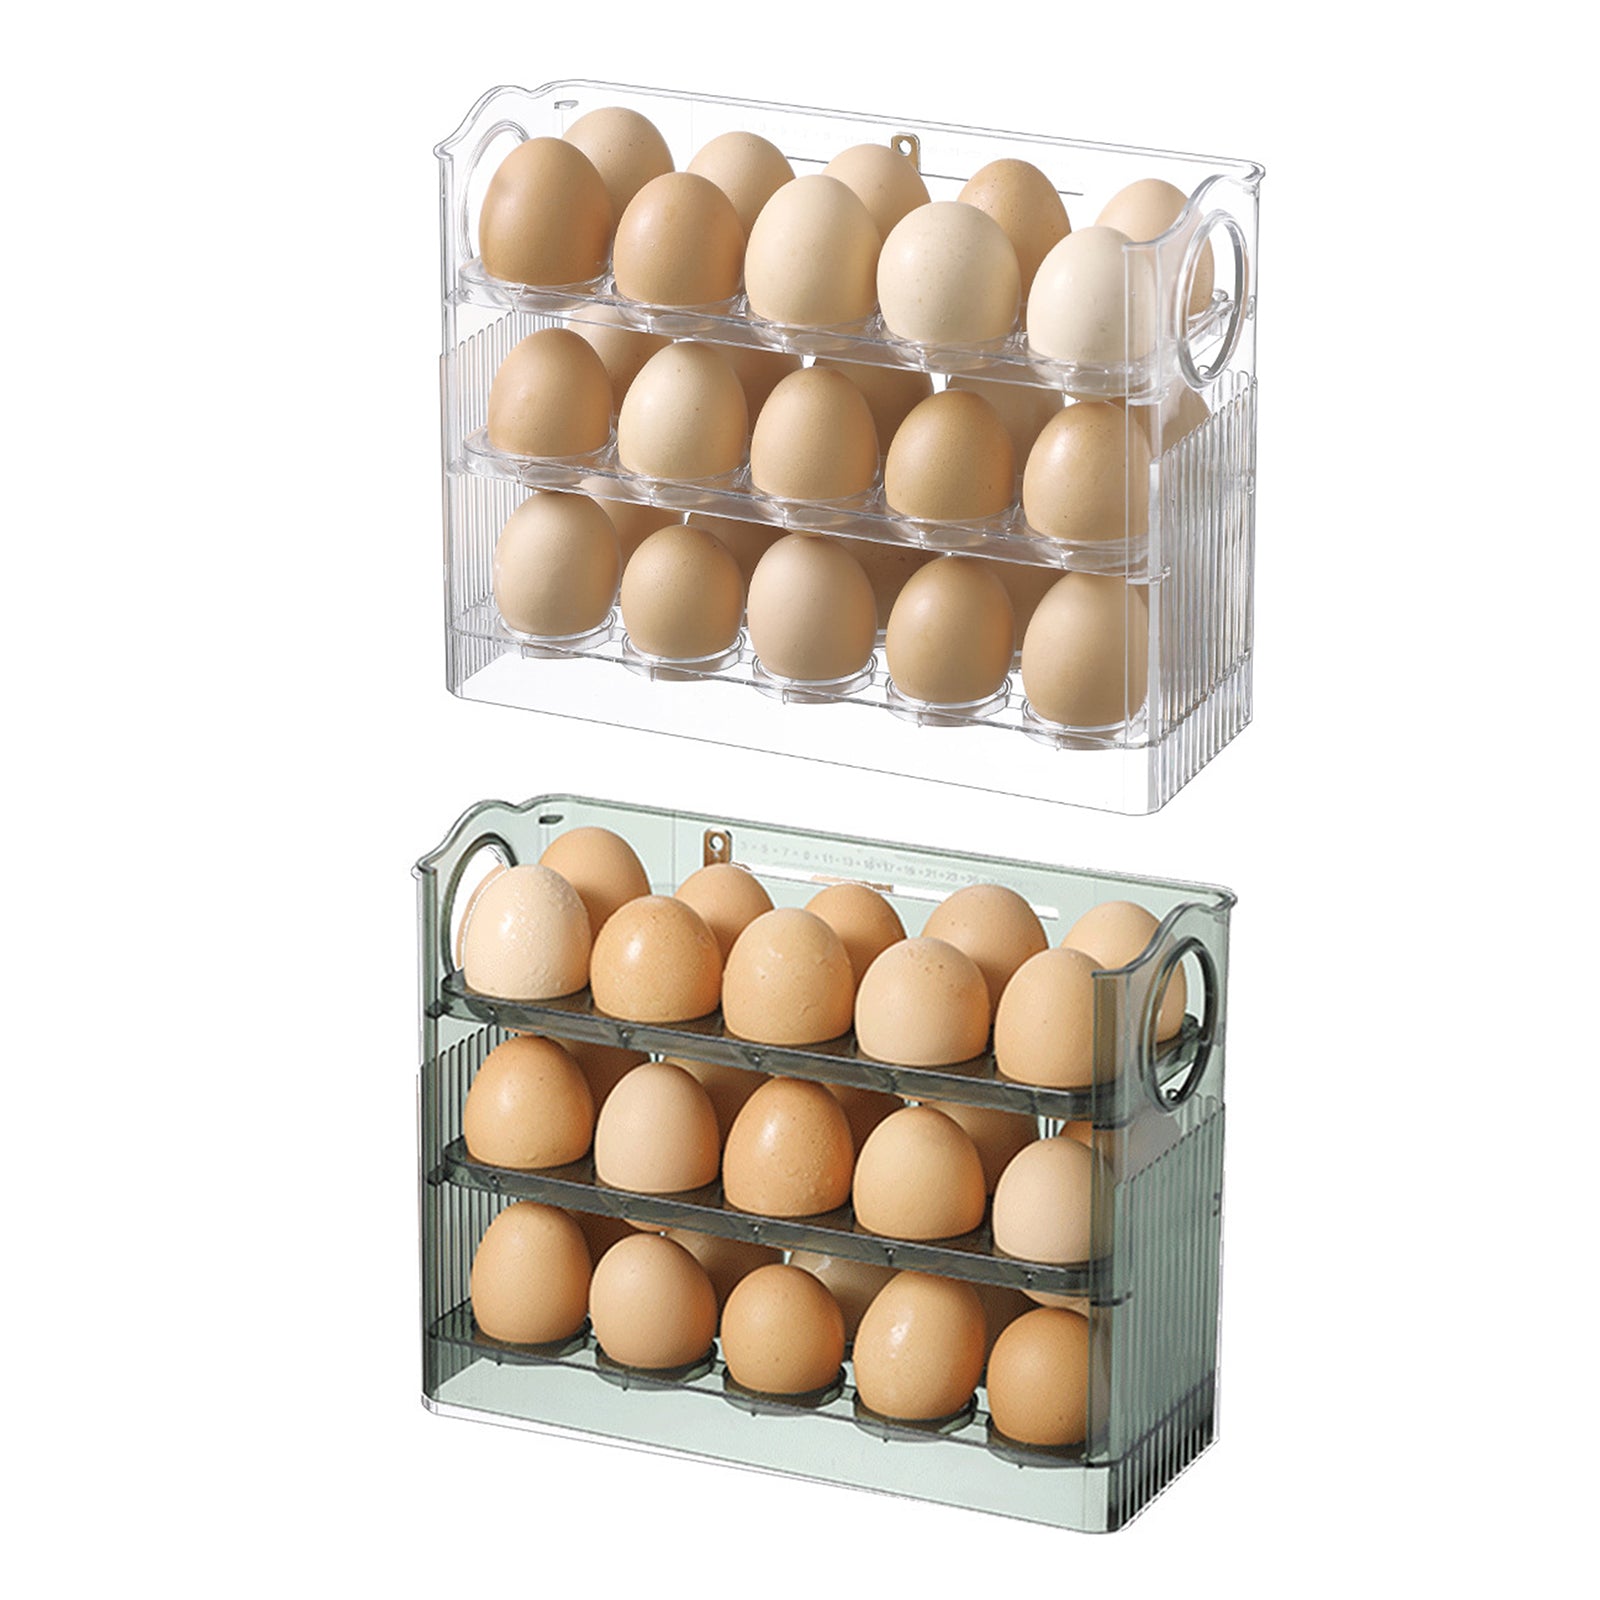 Suport organizator etajat, triplu, pentru depozitare 30 oua, transparent